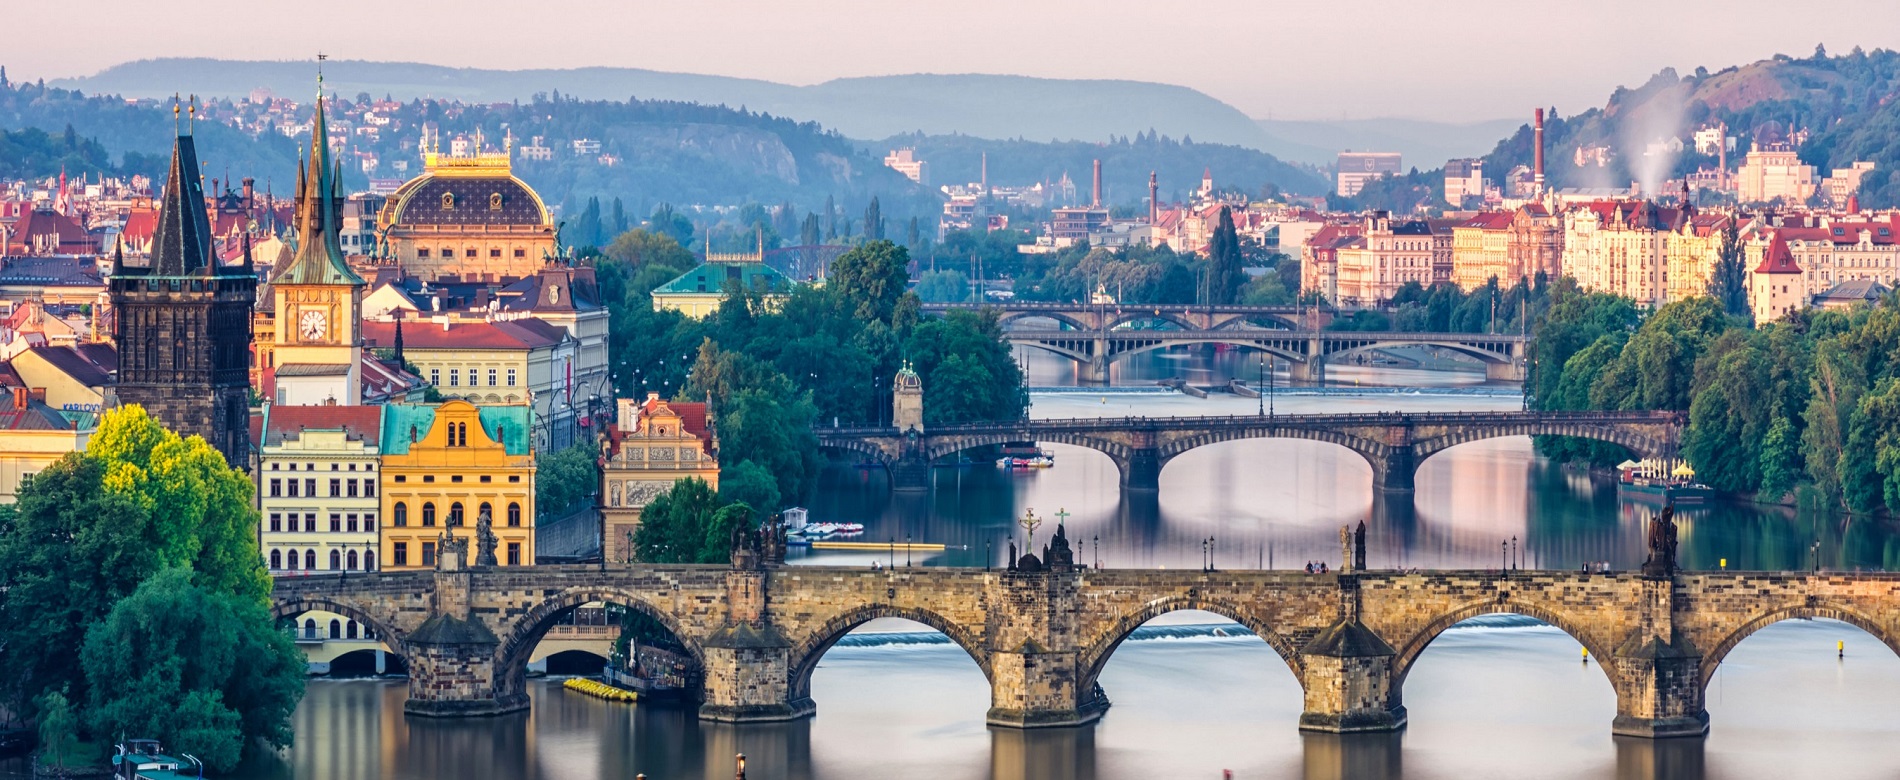 Puentes de Praga atravesando el río Moldava.